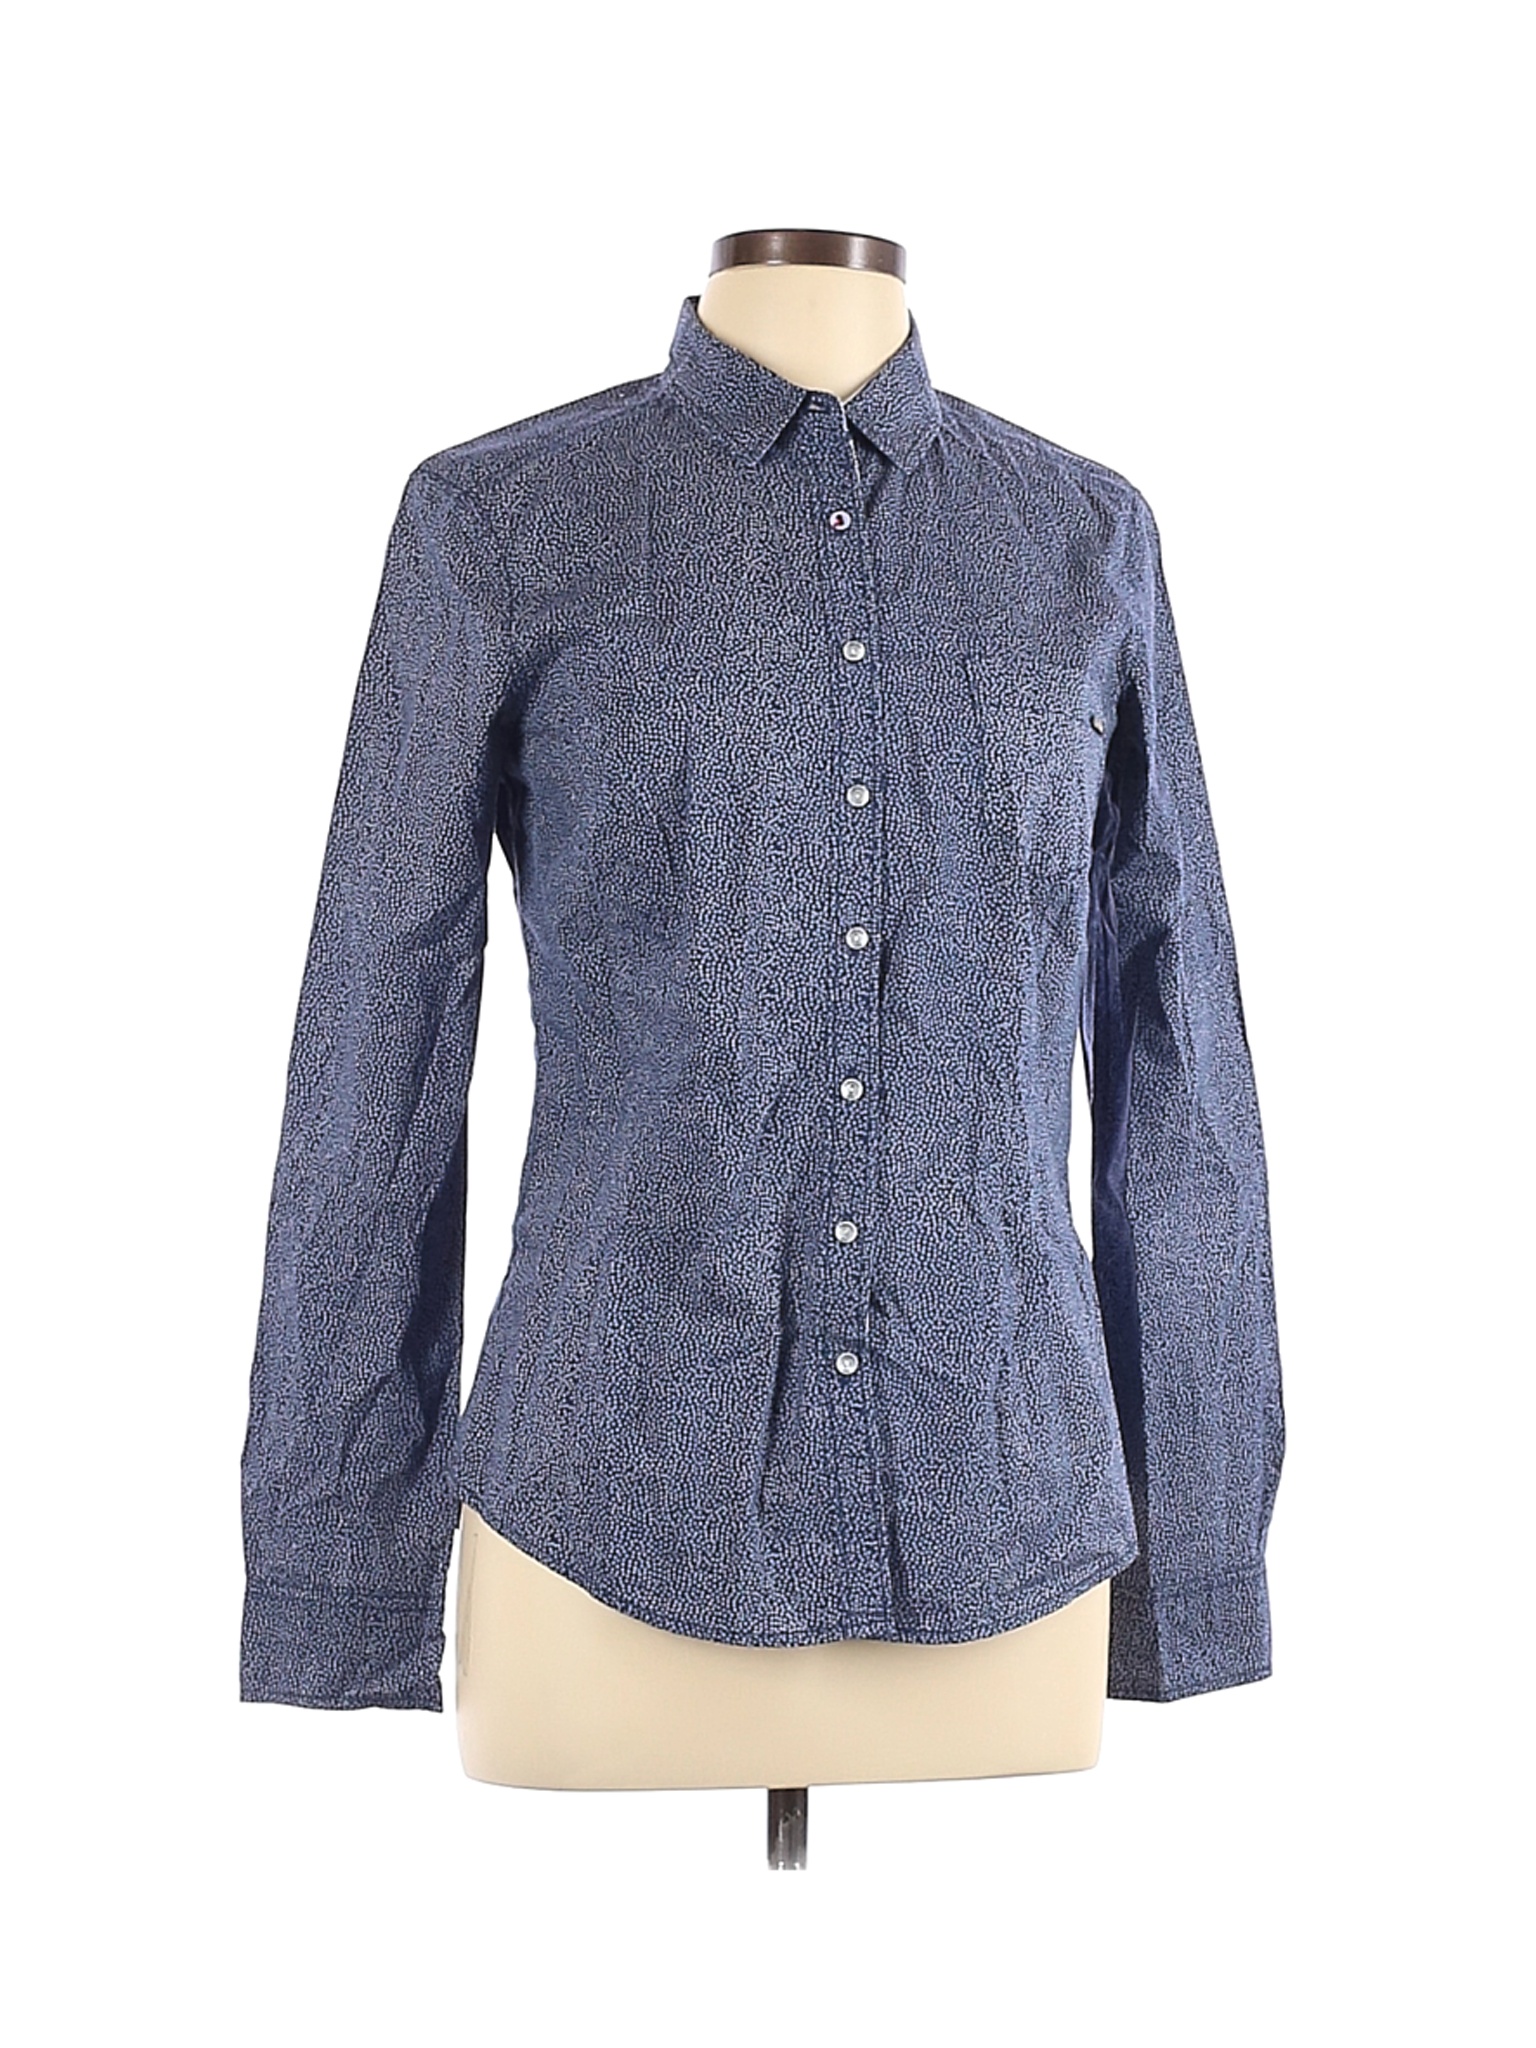 Assorted Brands Women Blue Long Sleeve Button-Down Shirt L | eBay